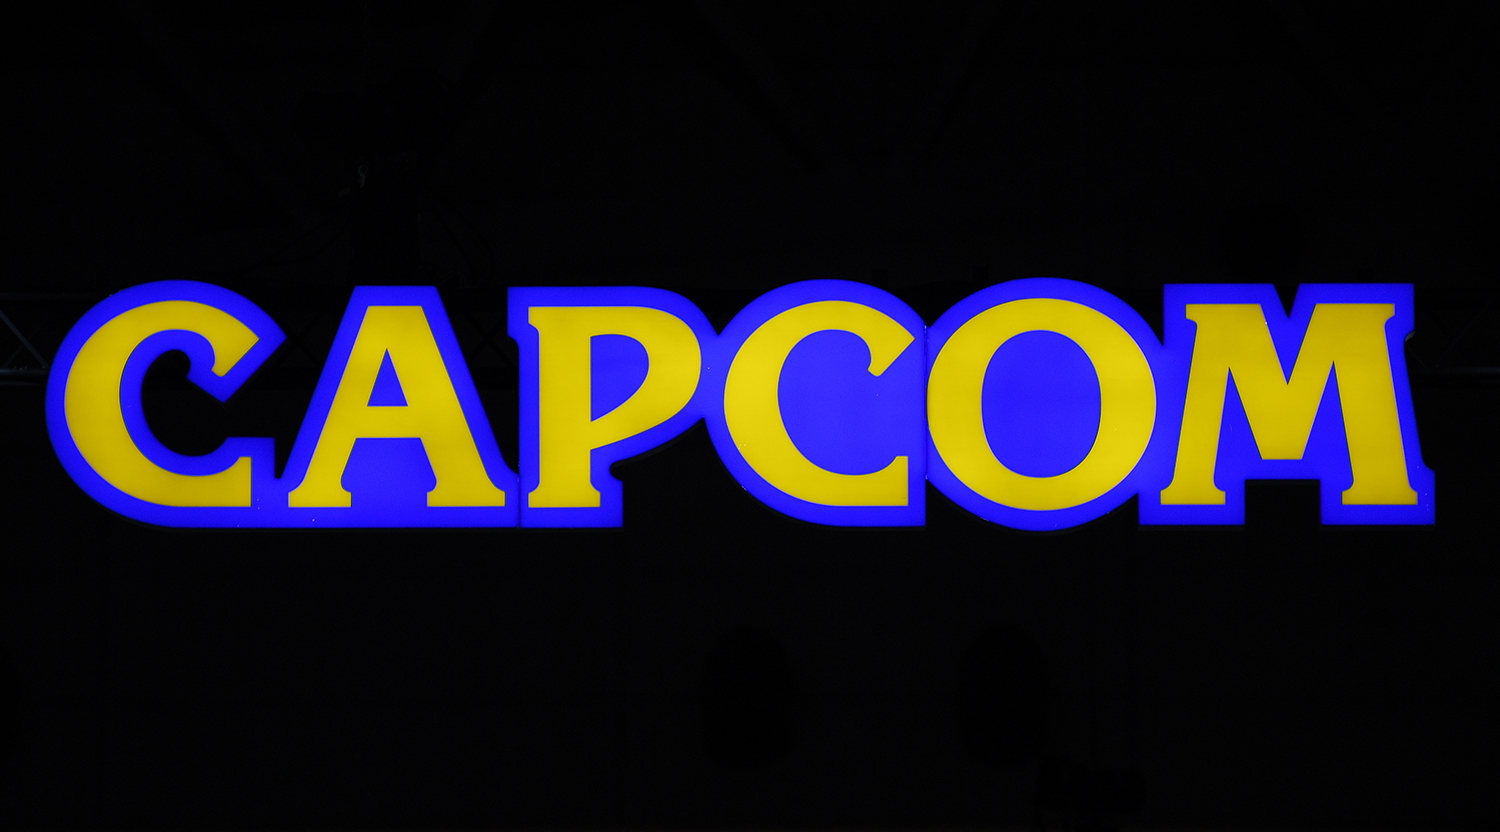 The Capcom logo against a black background to represent the Capcom Countdown announcement.